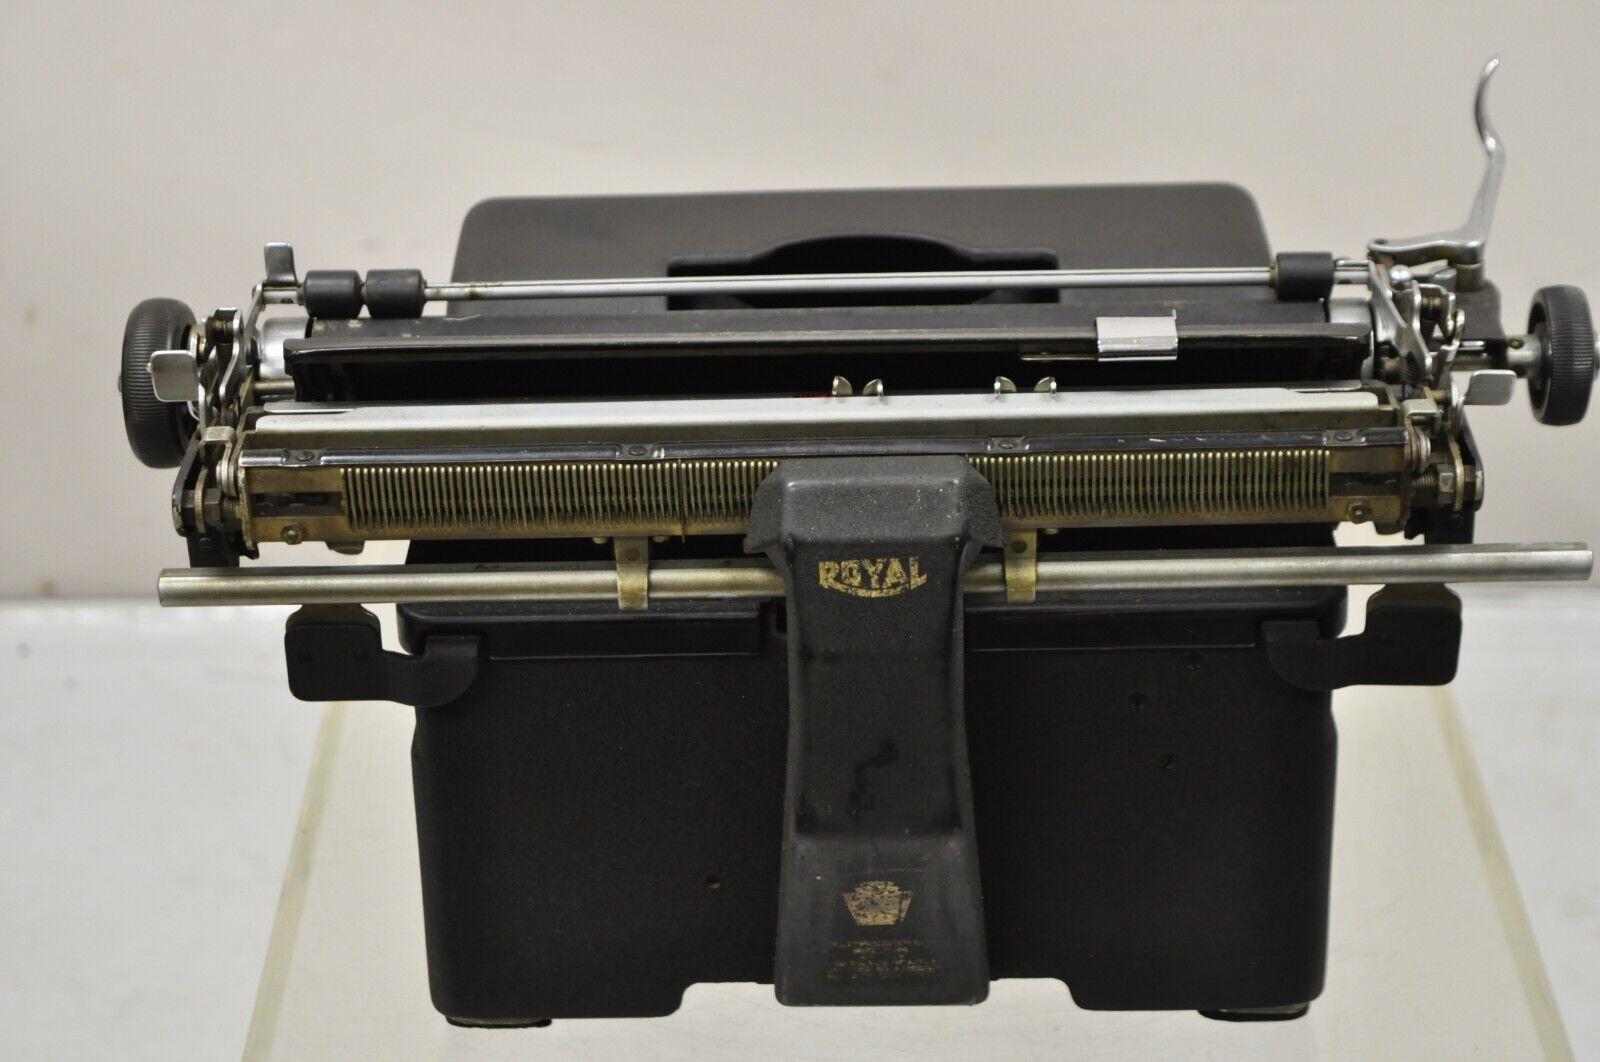 Vintage 1940er Royal KMM Modell 2178000 Magic Margin Touch Control Schreibmaschine (Metall) im Angebot